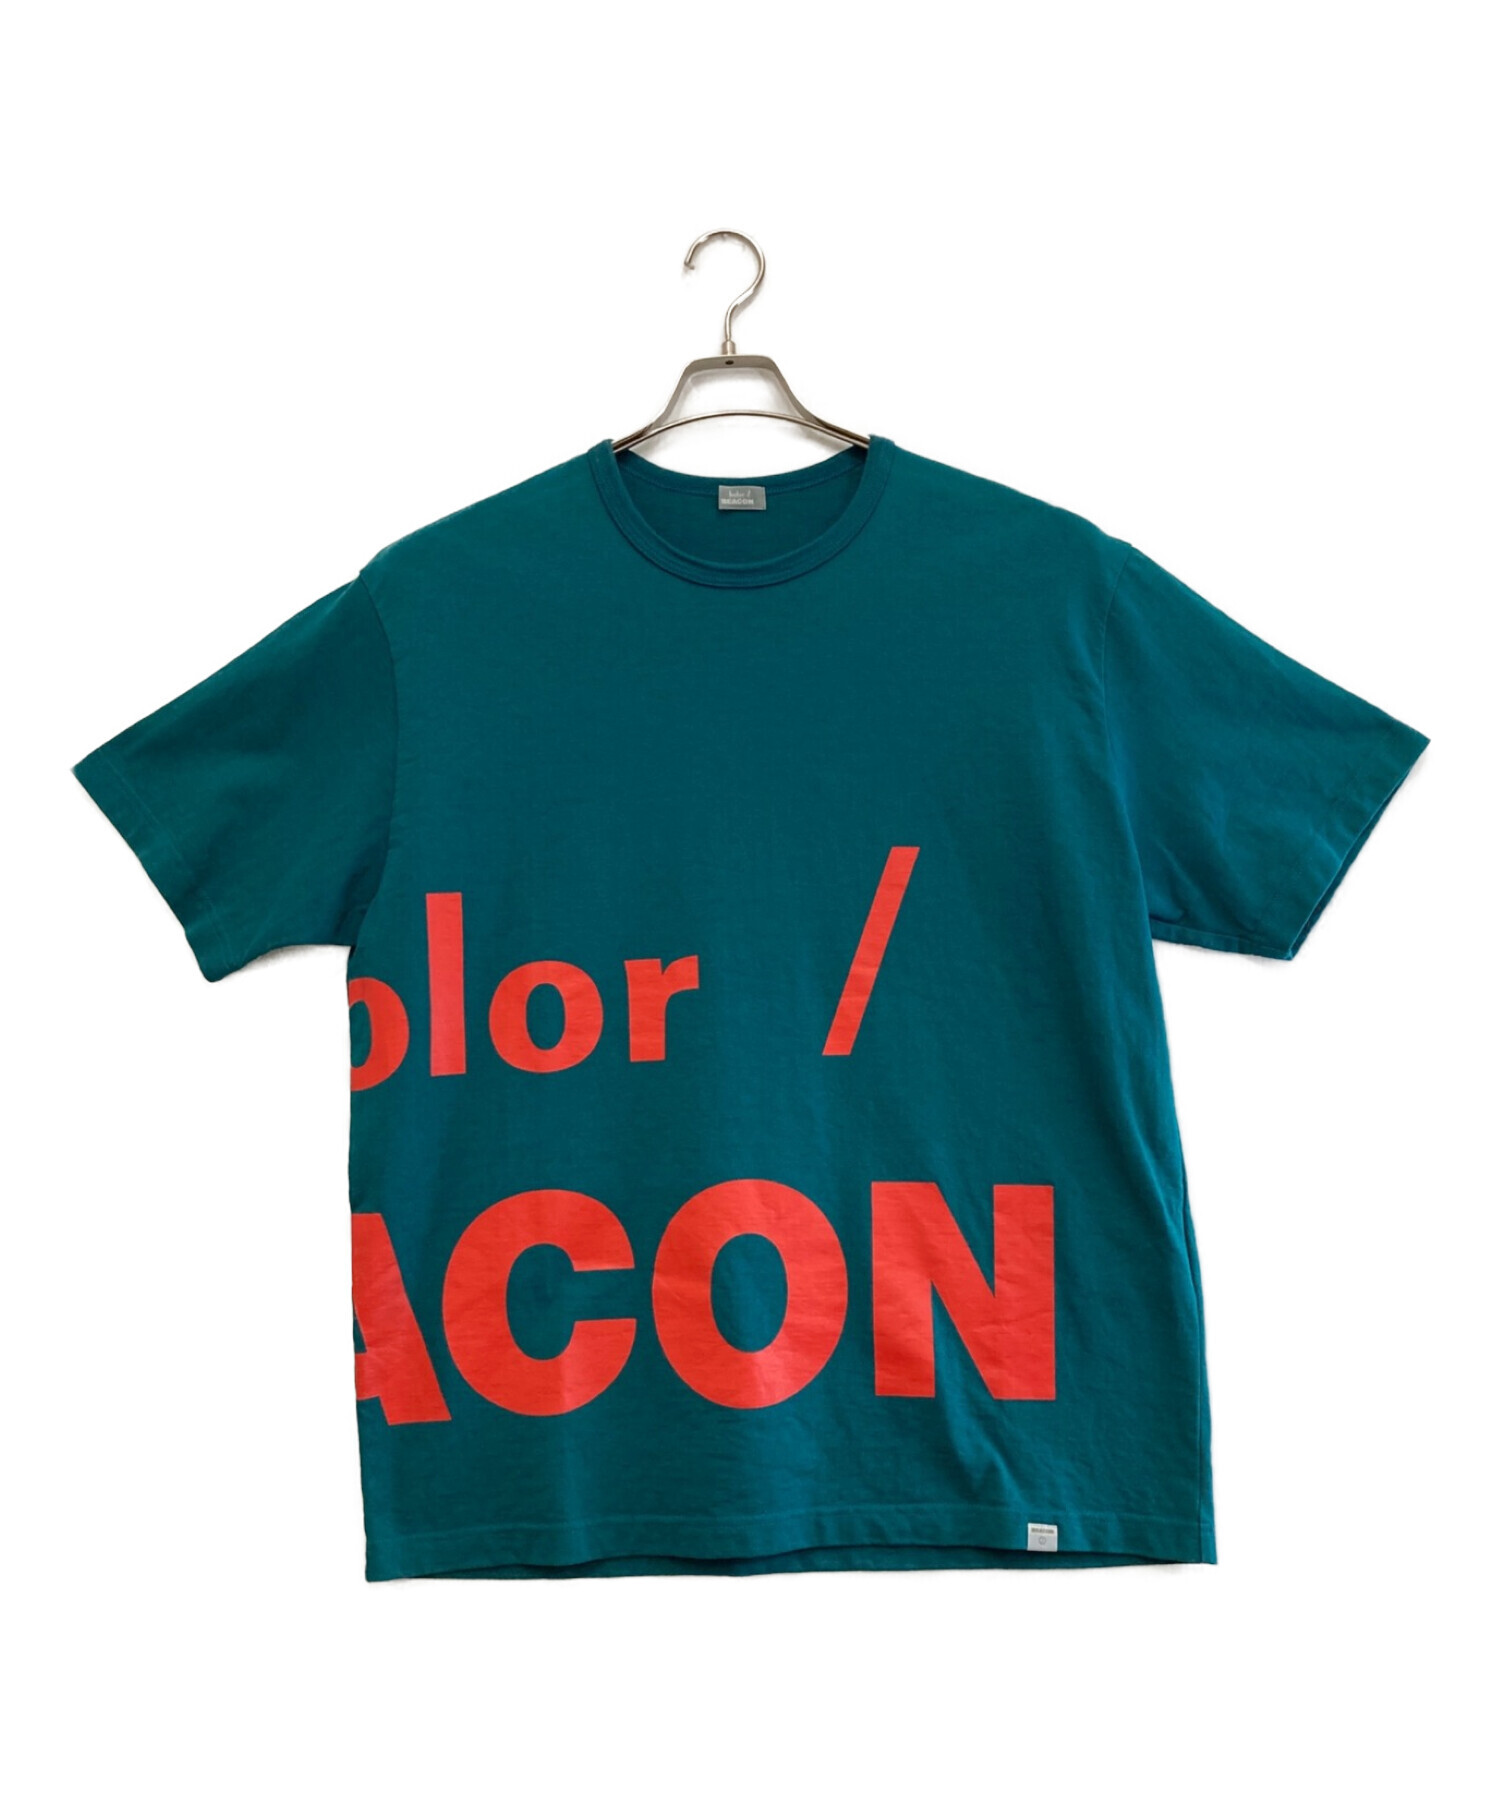 中古・古着通販】kolor/BEACON (カラービーコン) ビッグロゴTシャツ